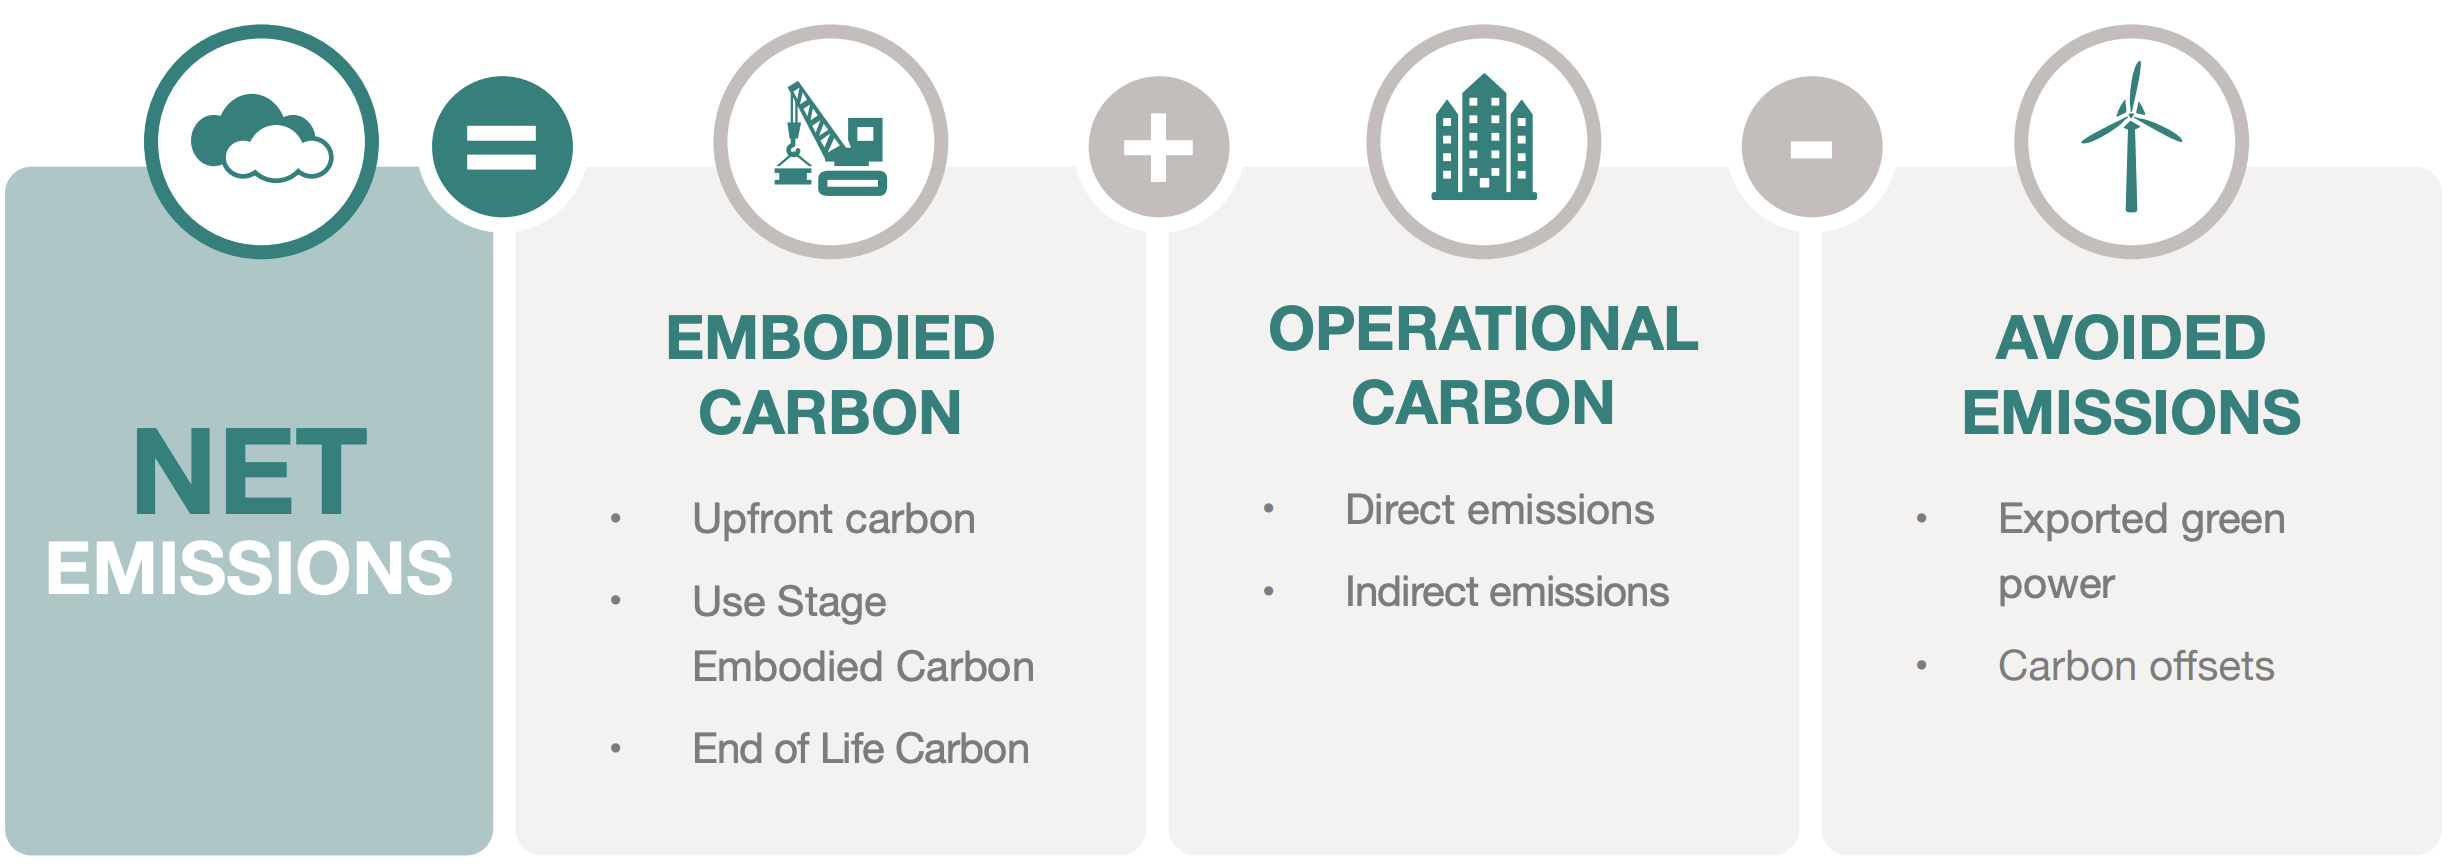 Zero Carbon Building Standards - Net Emissions